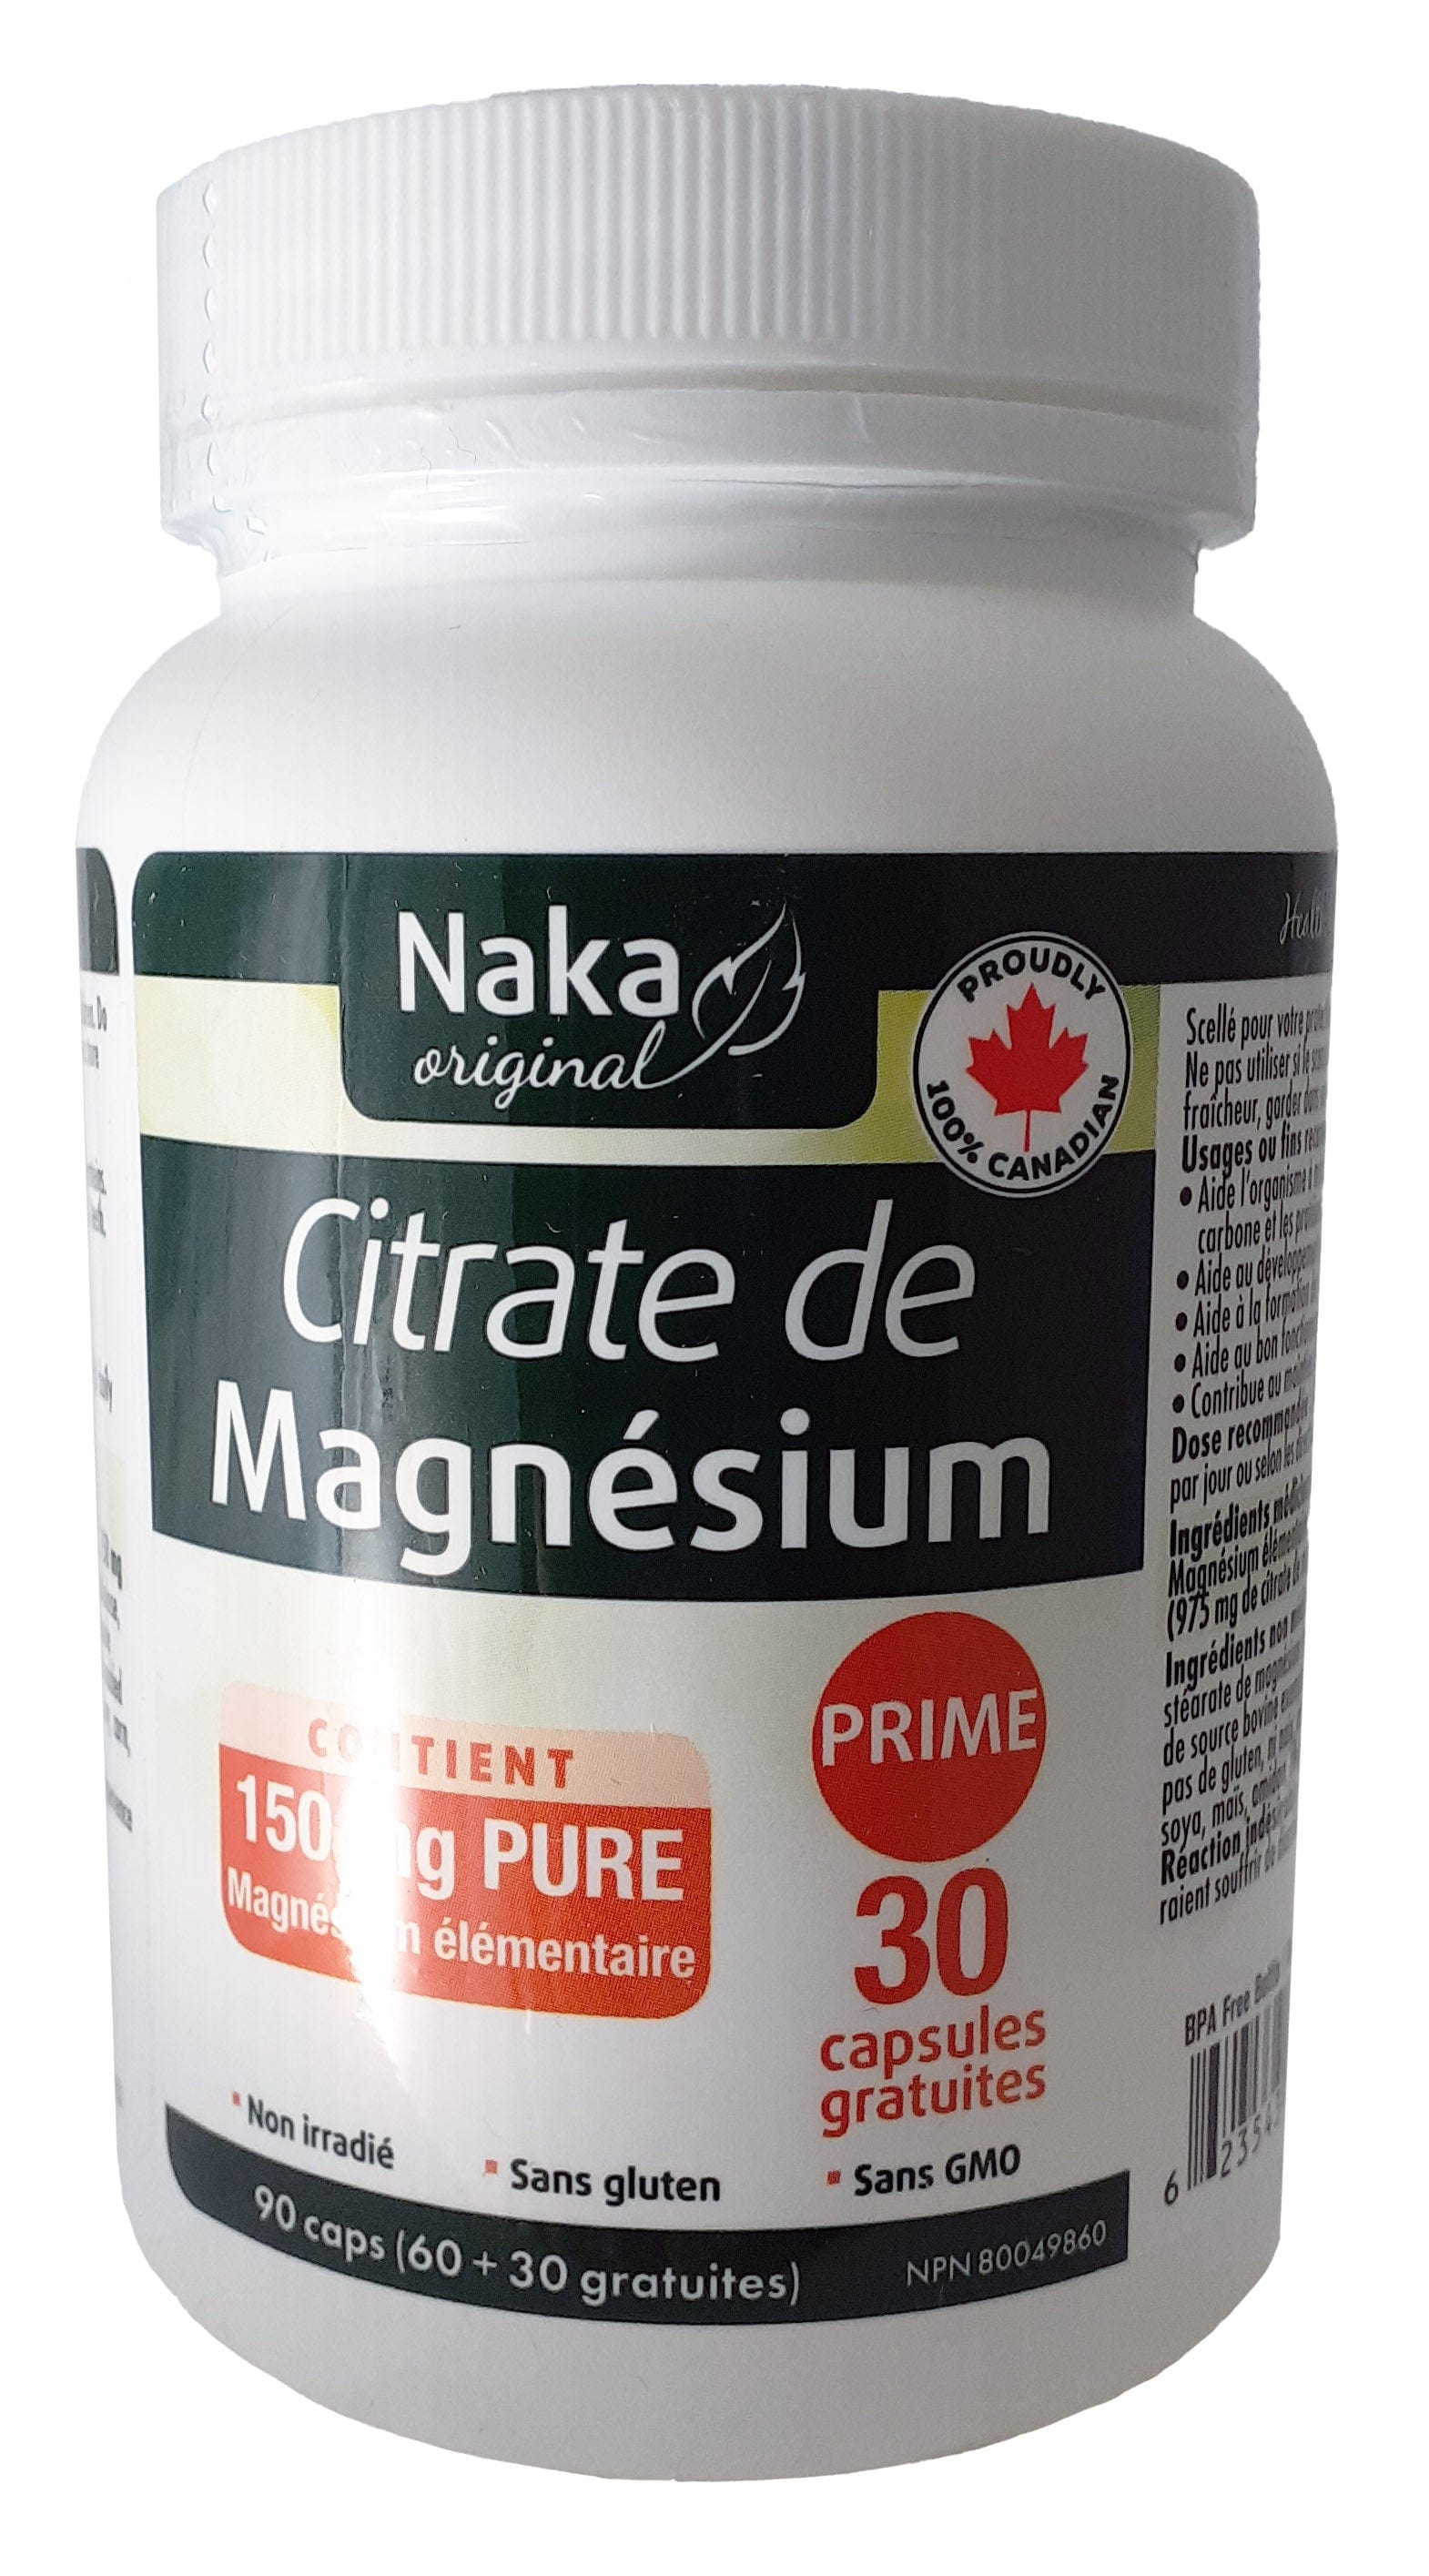 NAKA Suppléments Citrate de magnésium (150mg) 90caps